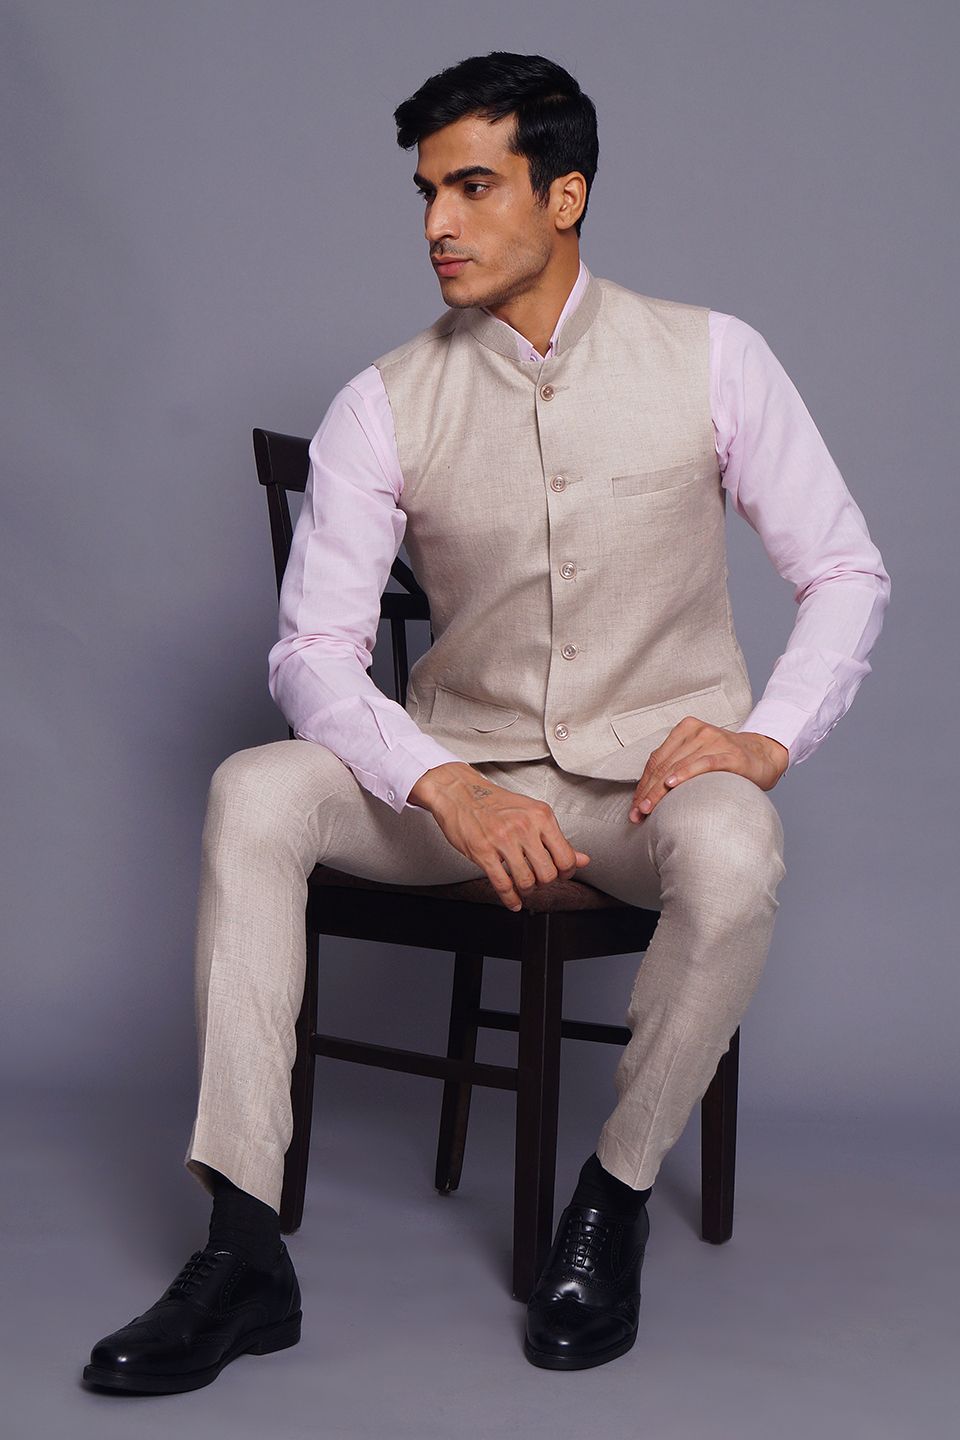 Wintage Men's Pure Linen  Vest & Pant Set: Cream